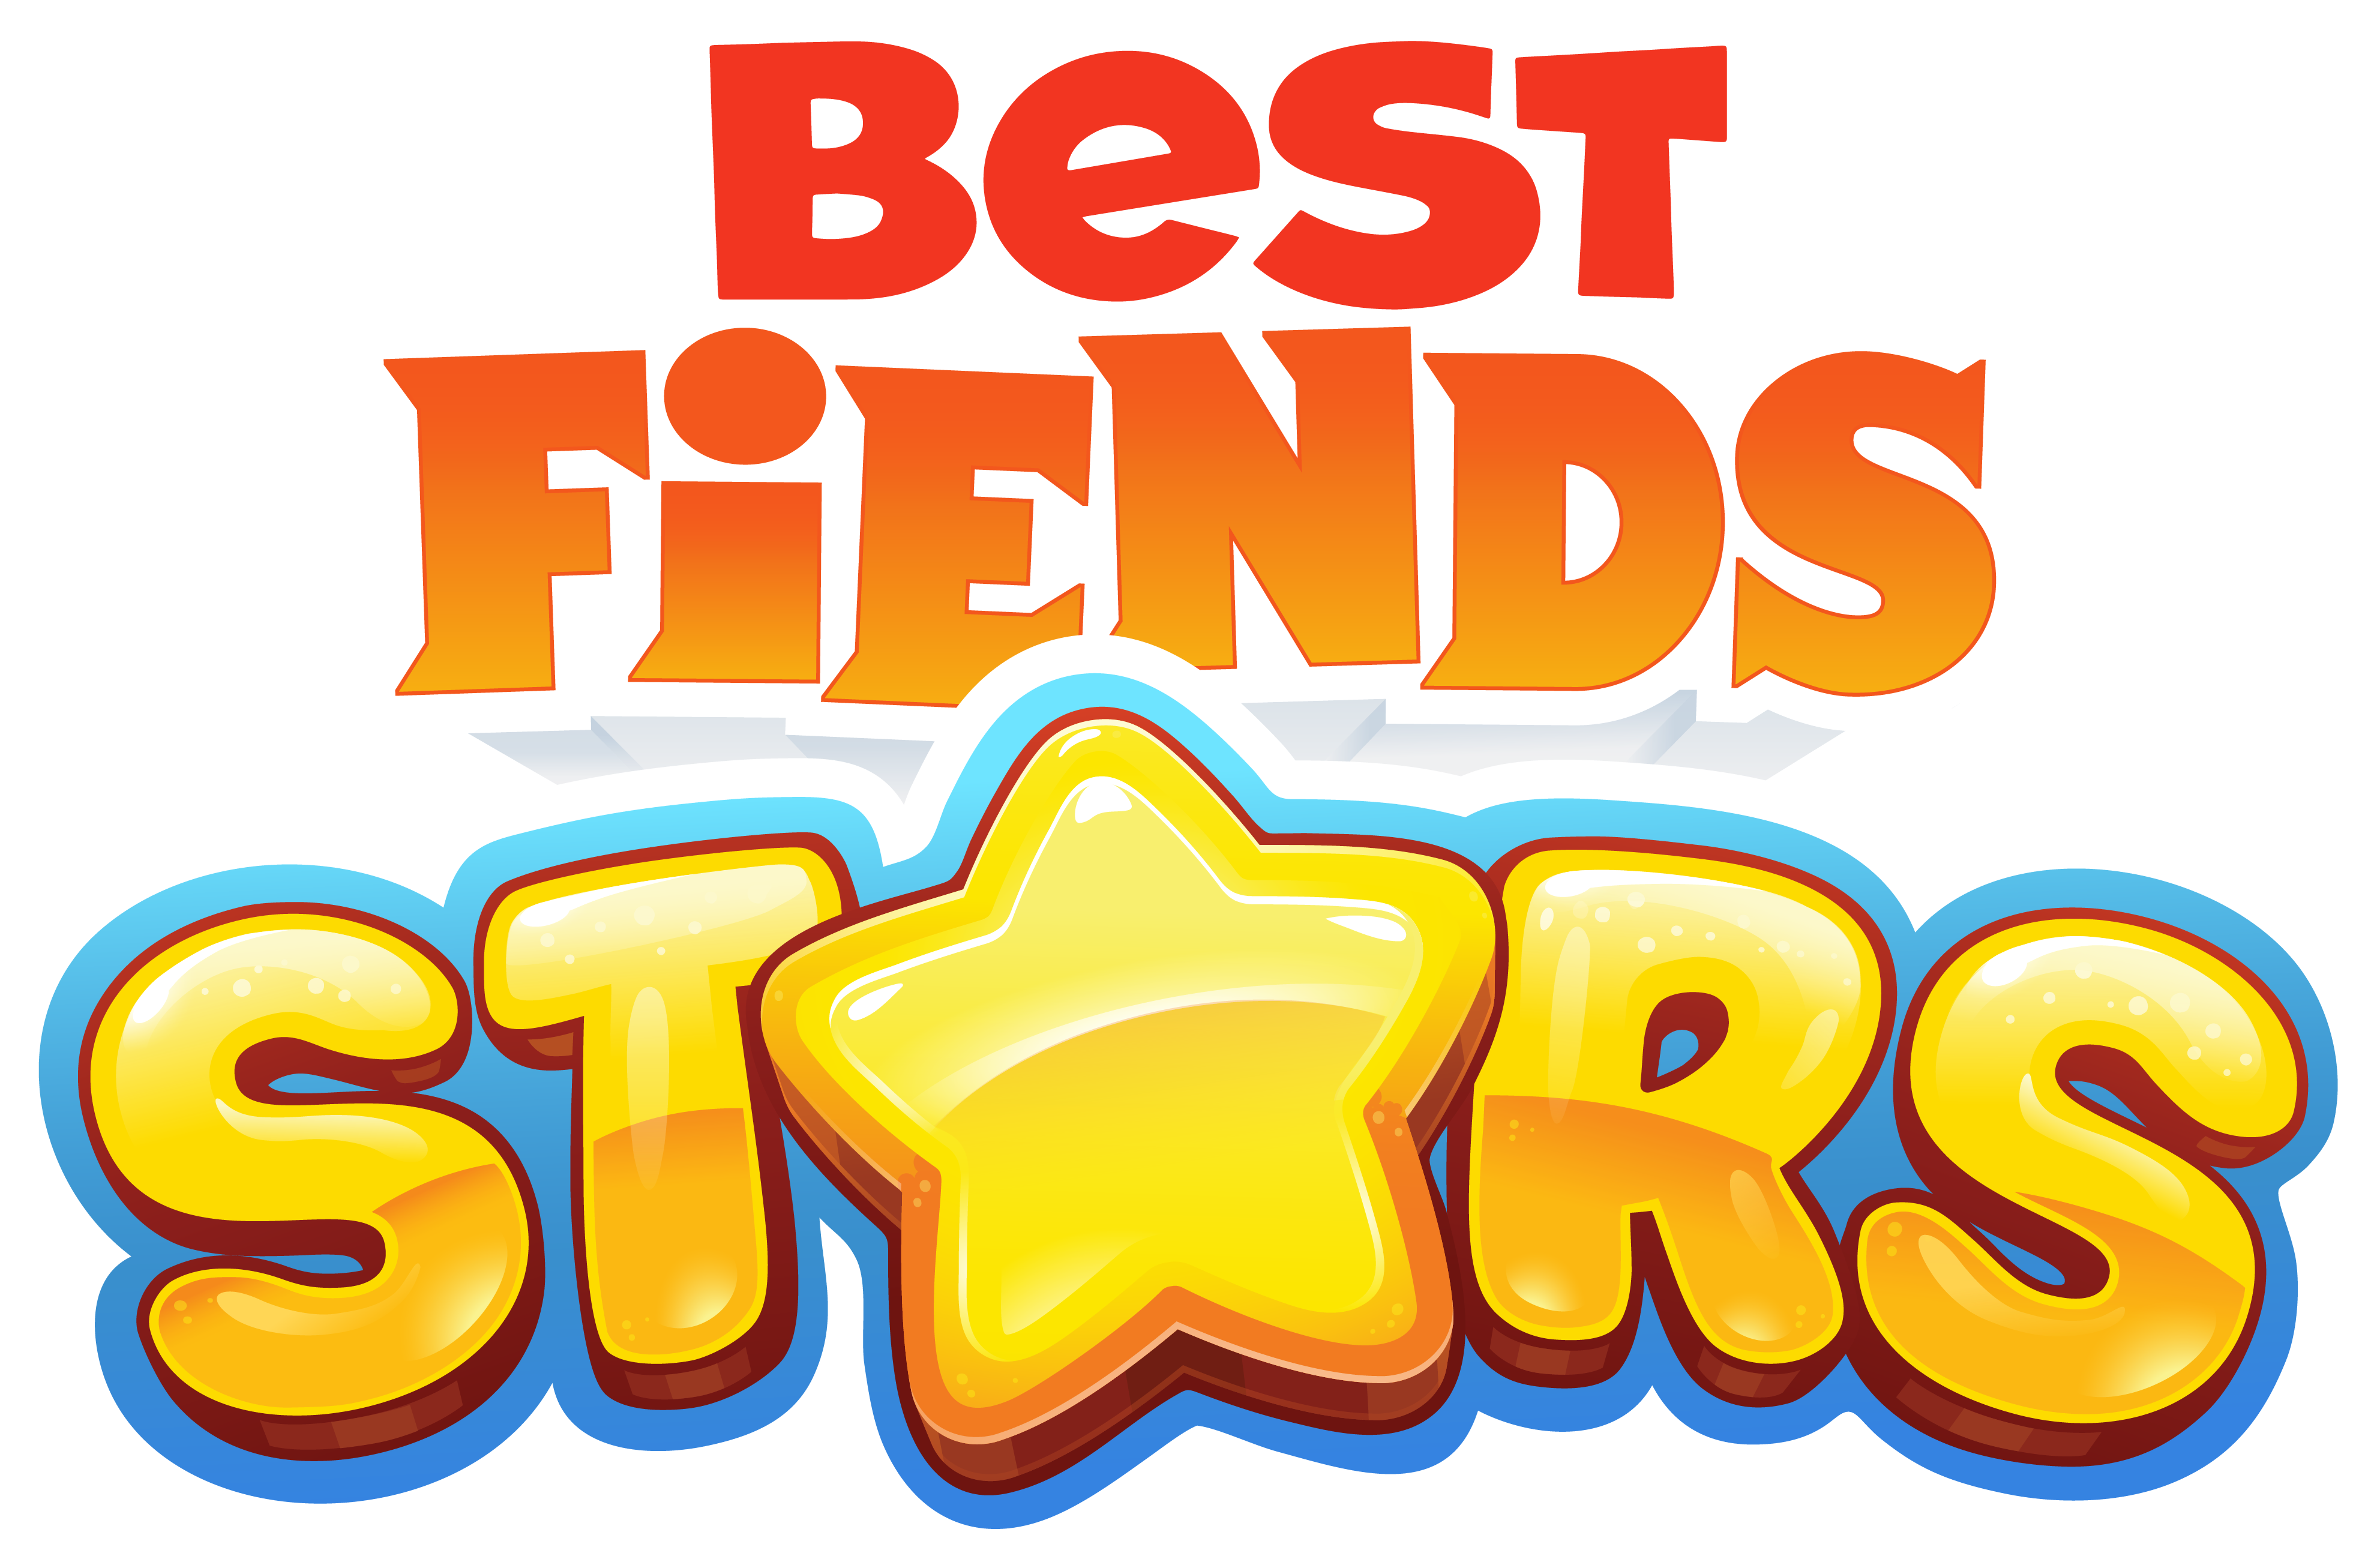 Логотип игры Бест френдс. 3 Бест фиенда. "Игра"best friends Forever v1.03.